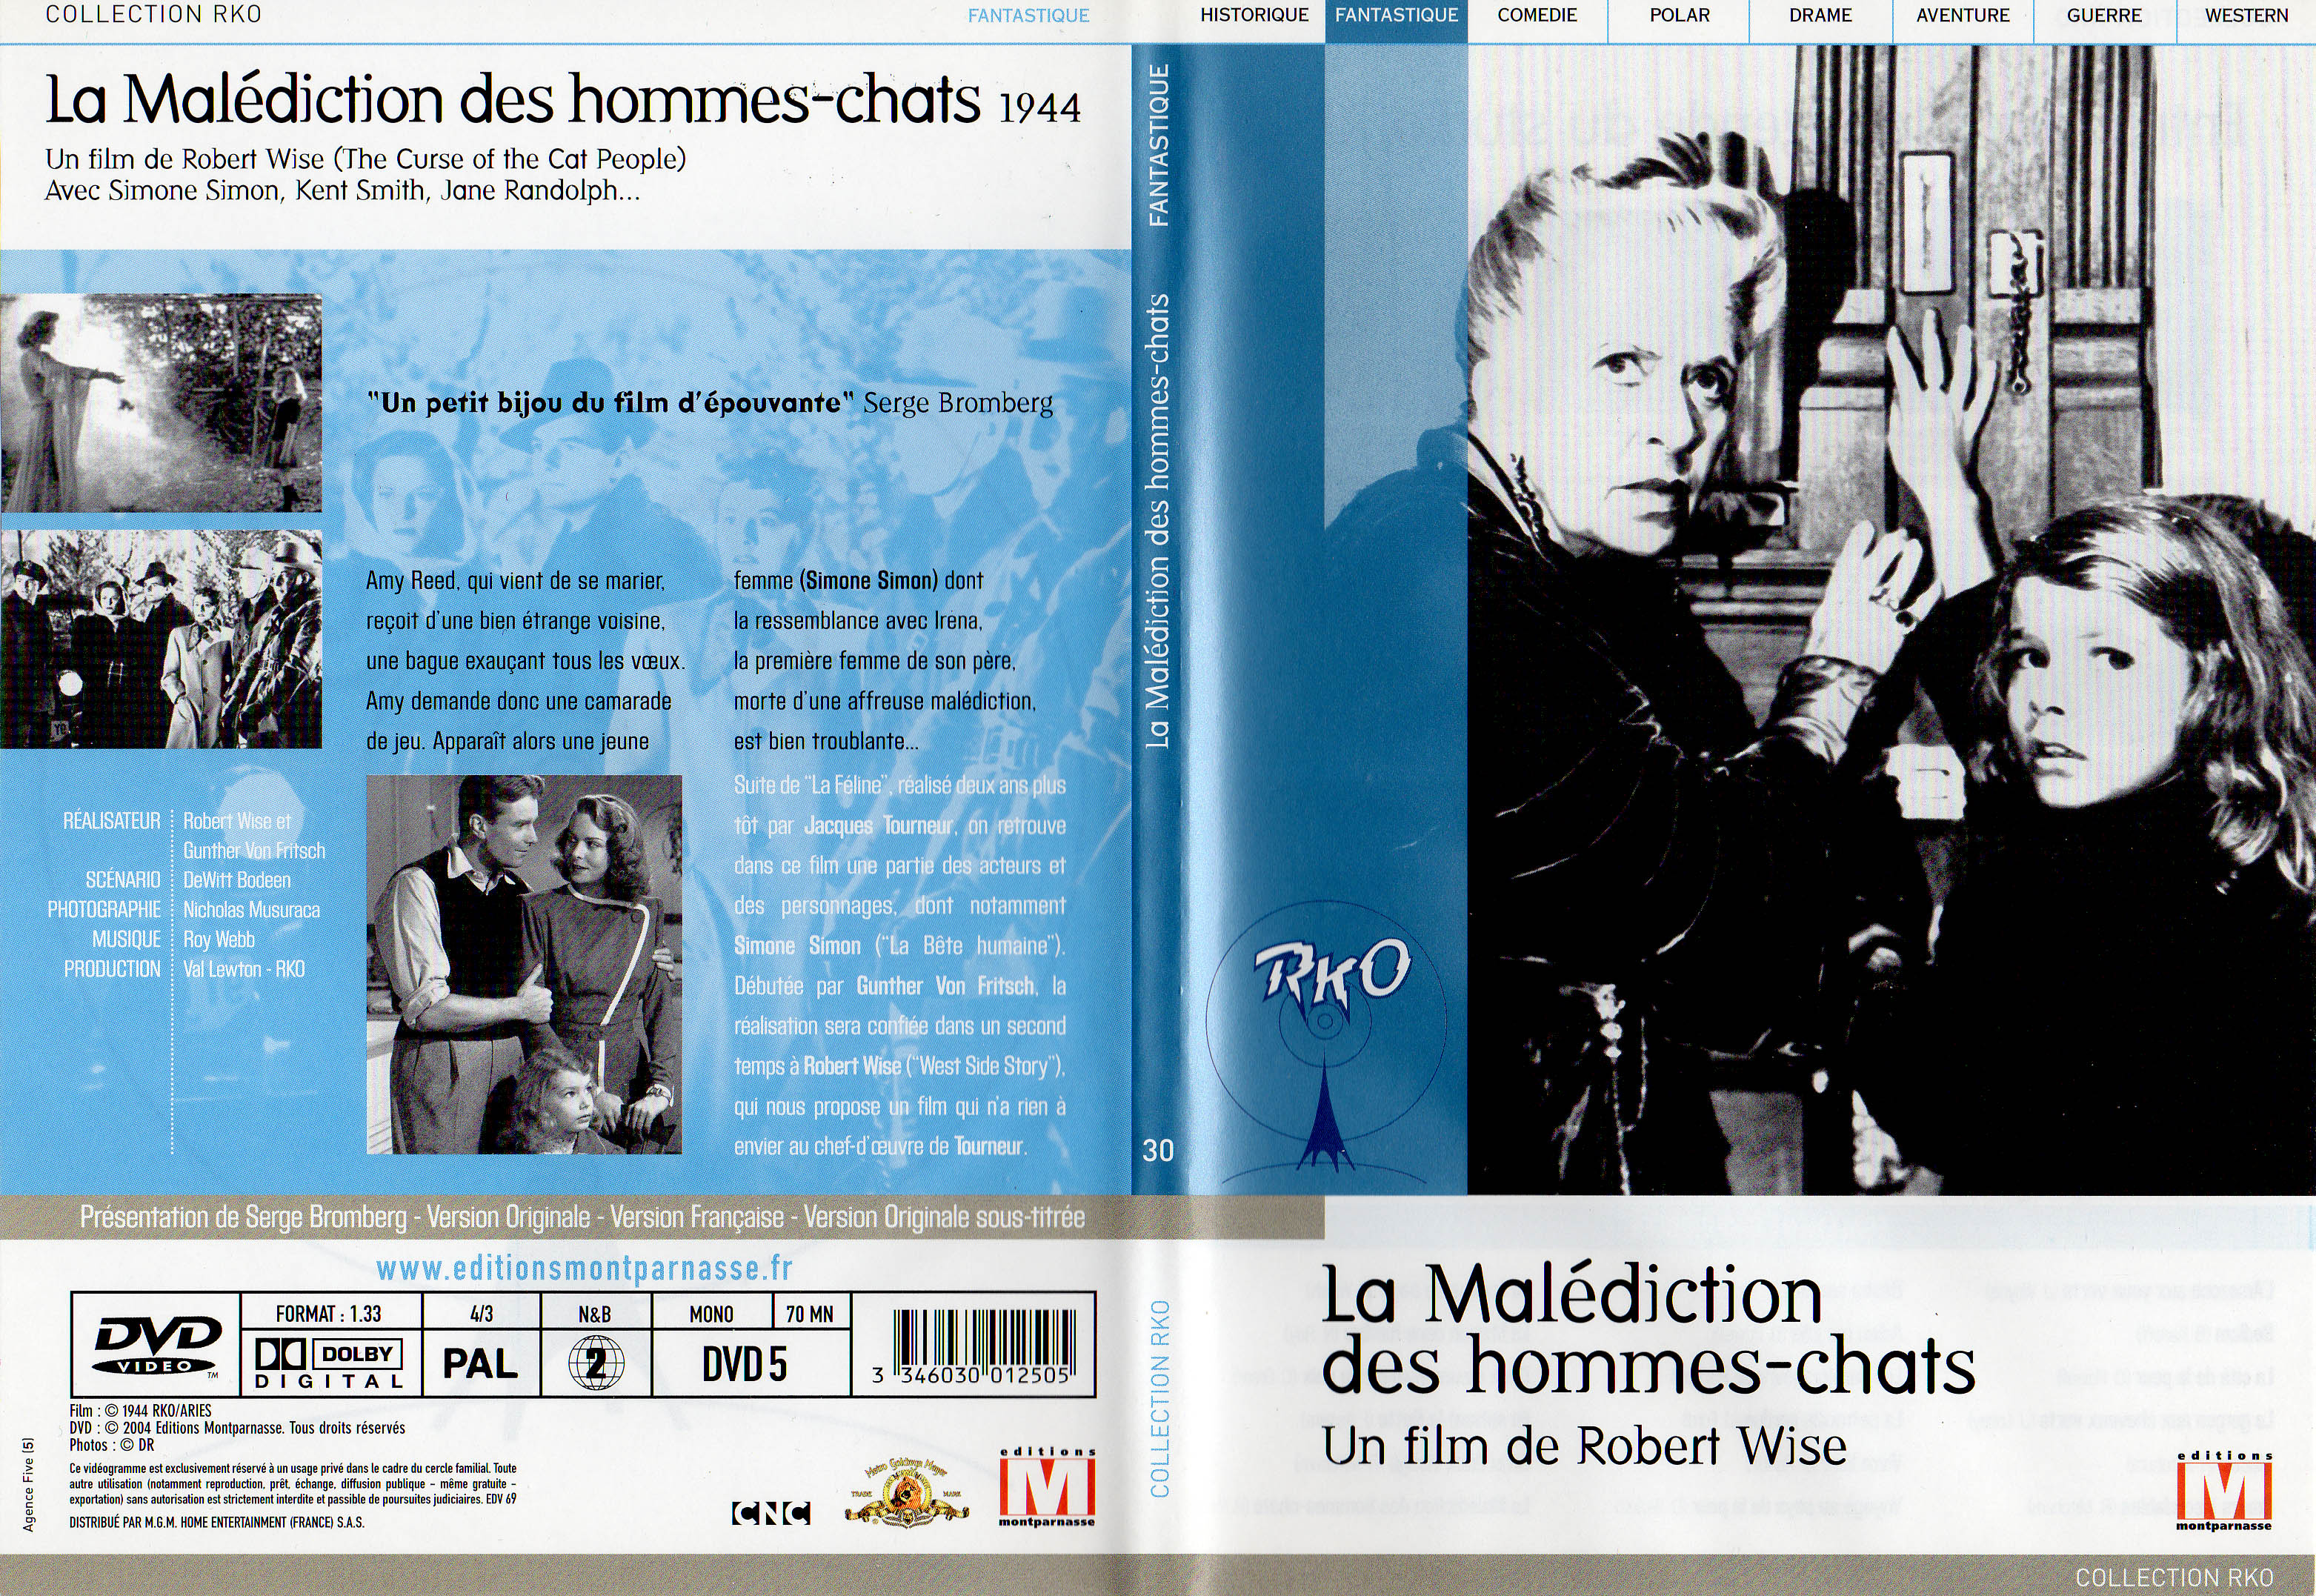 Jaquette DVD La malediction des hommes-chats v2